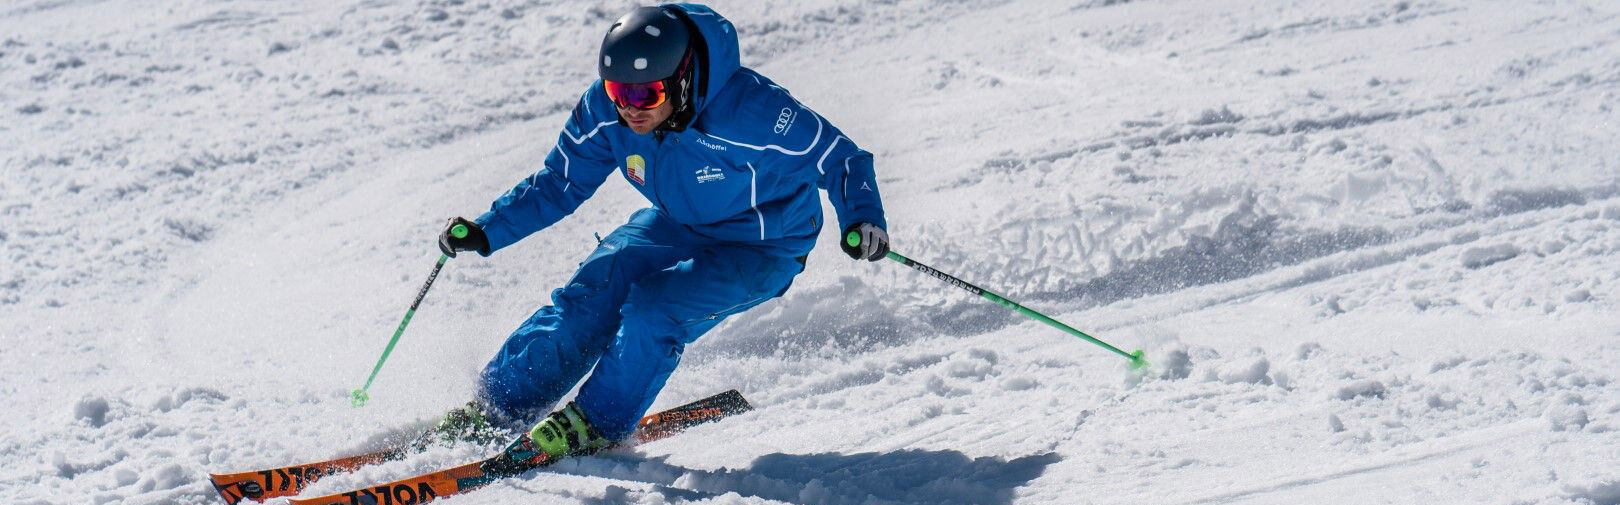 Skifahren lernen in Flachau - Skikurse, Snowboardkurse - Skischule Flachau